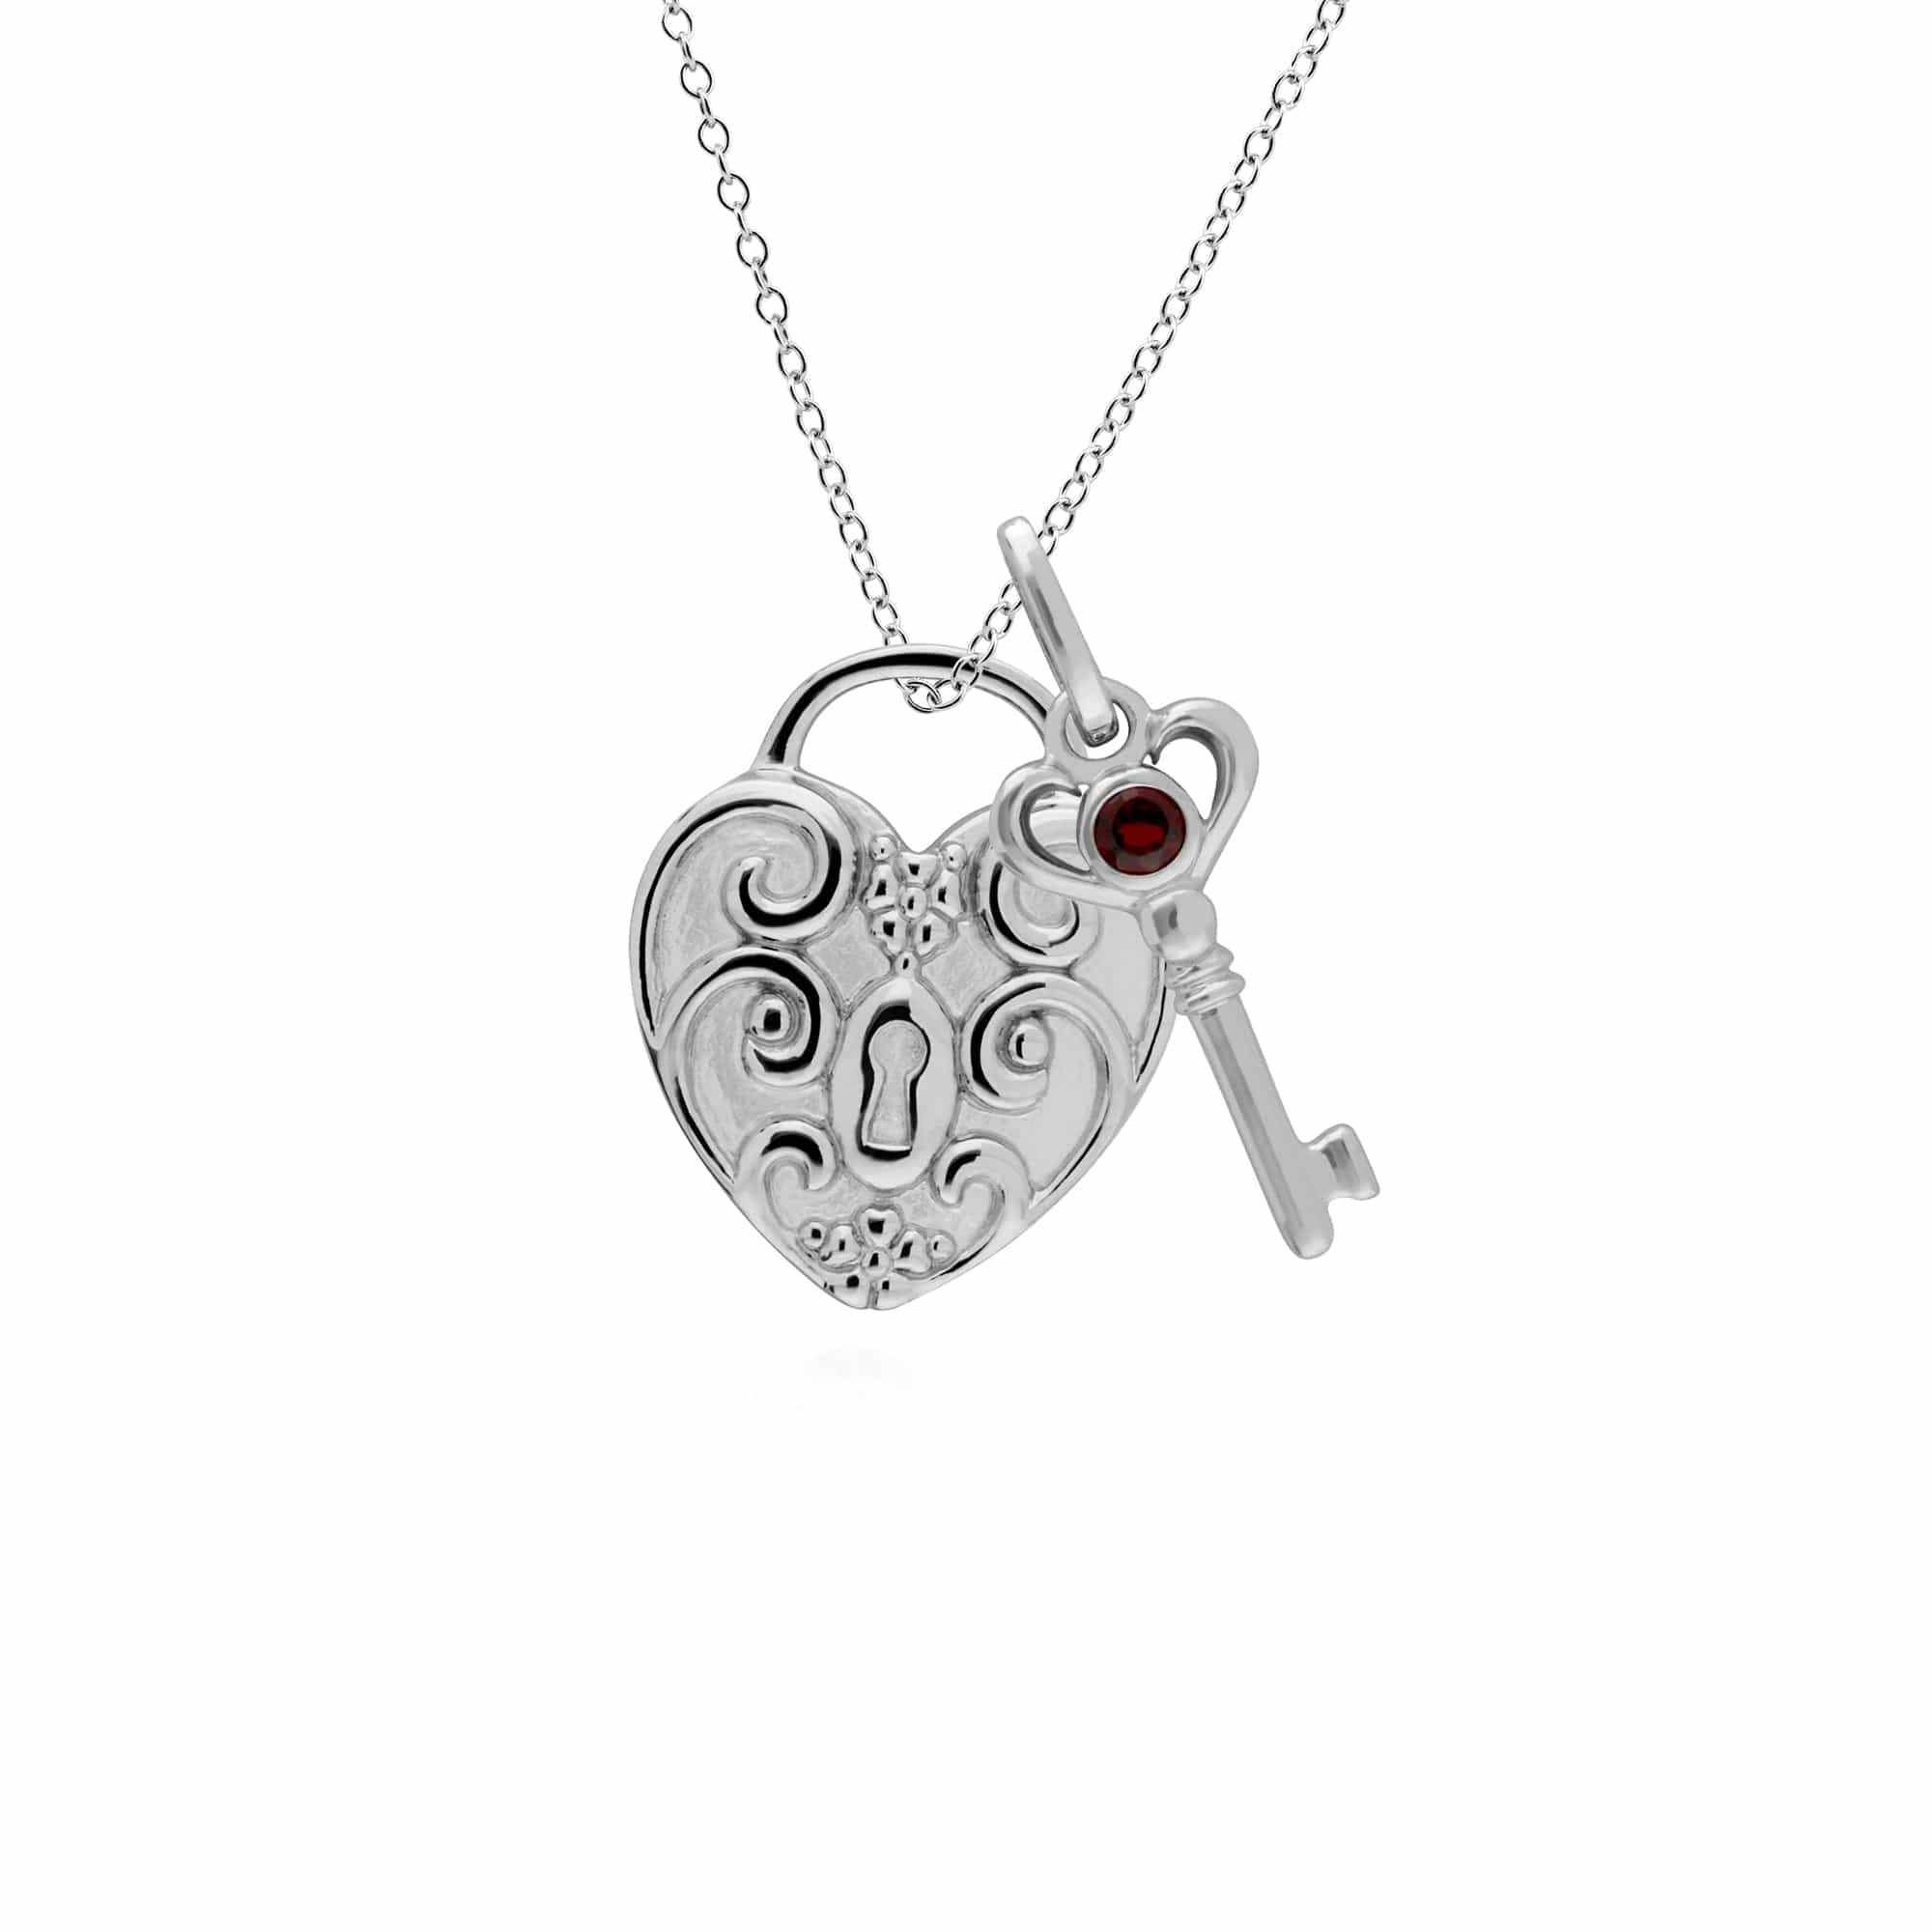 270P026406925-270P026601925 Classic Swirl Heart Lock Pendant & Garnet Key Charm in 925 Sterling Silver 1